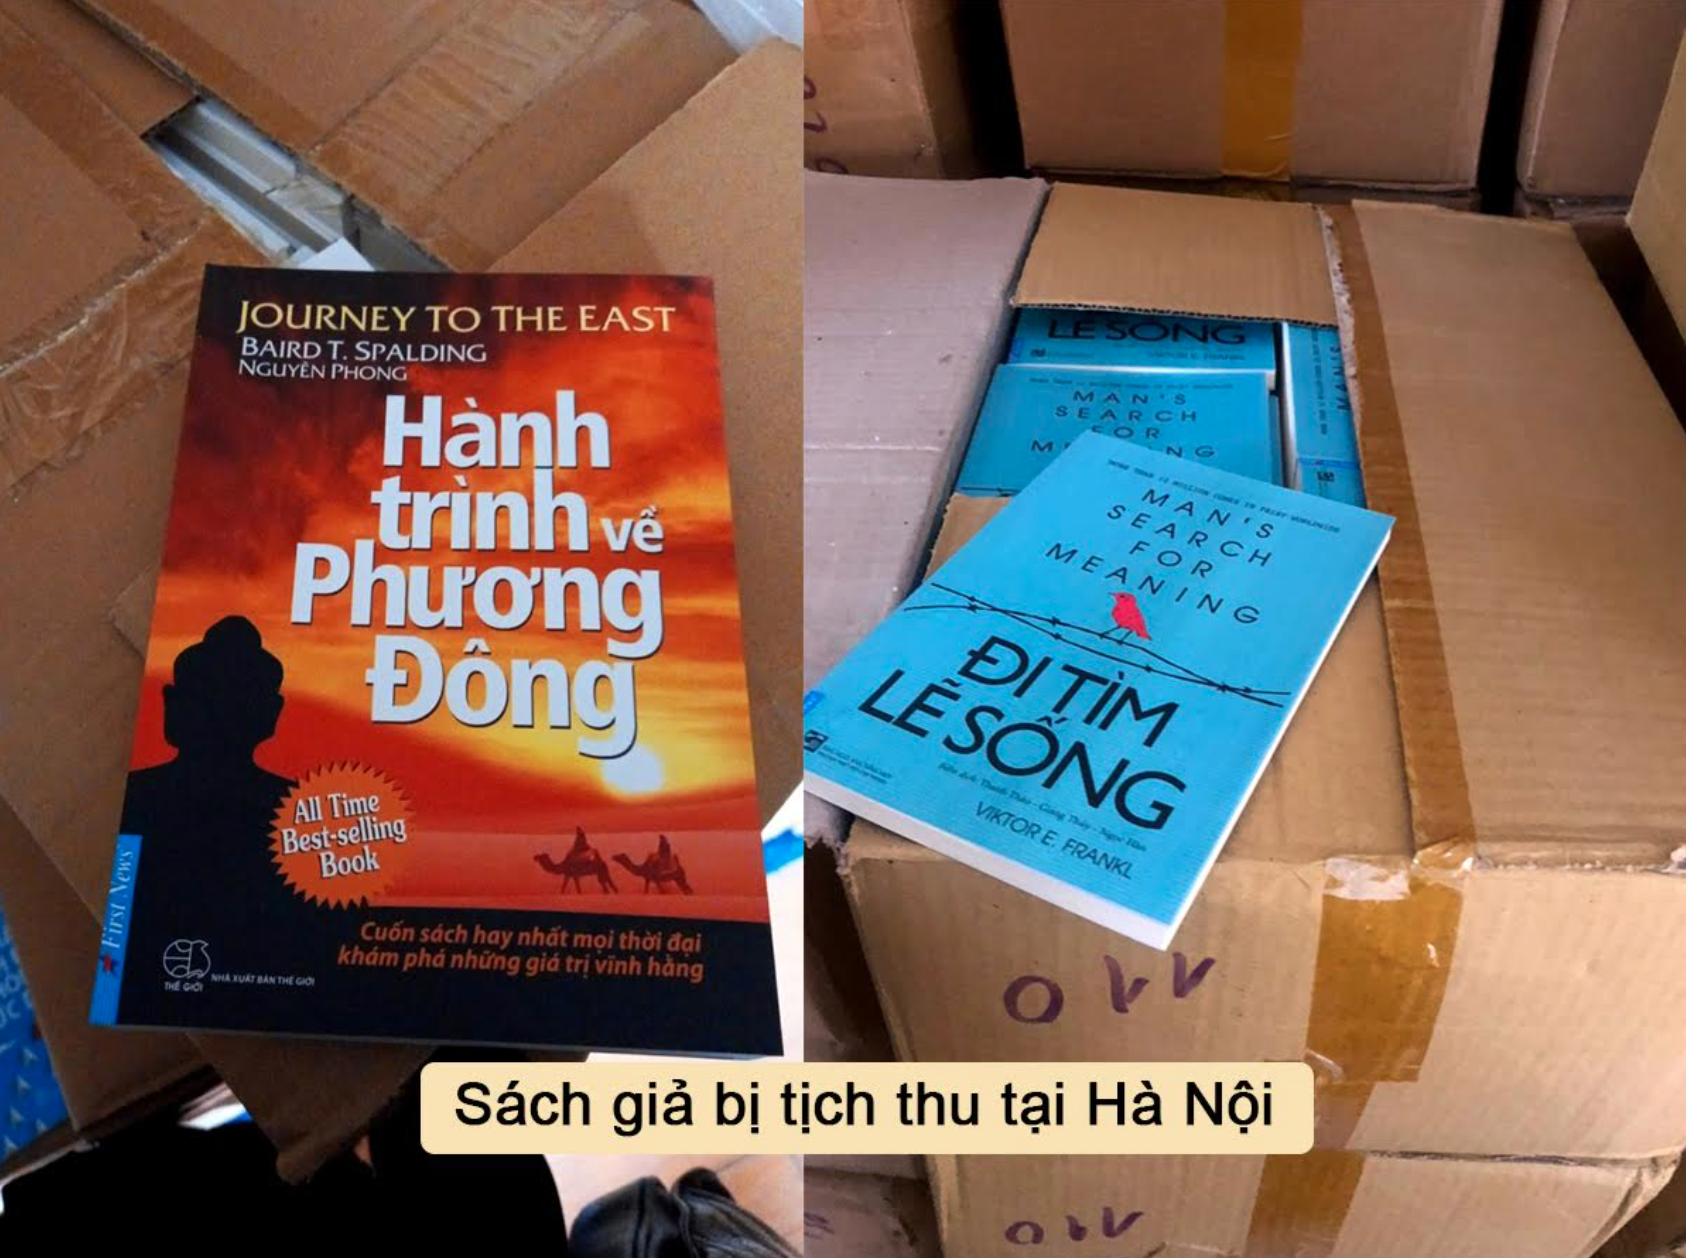 Vấn nạn sách giả: Bào mòn văn hóa đọc của người Việt - 2